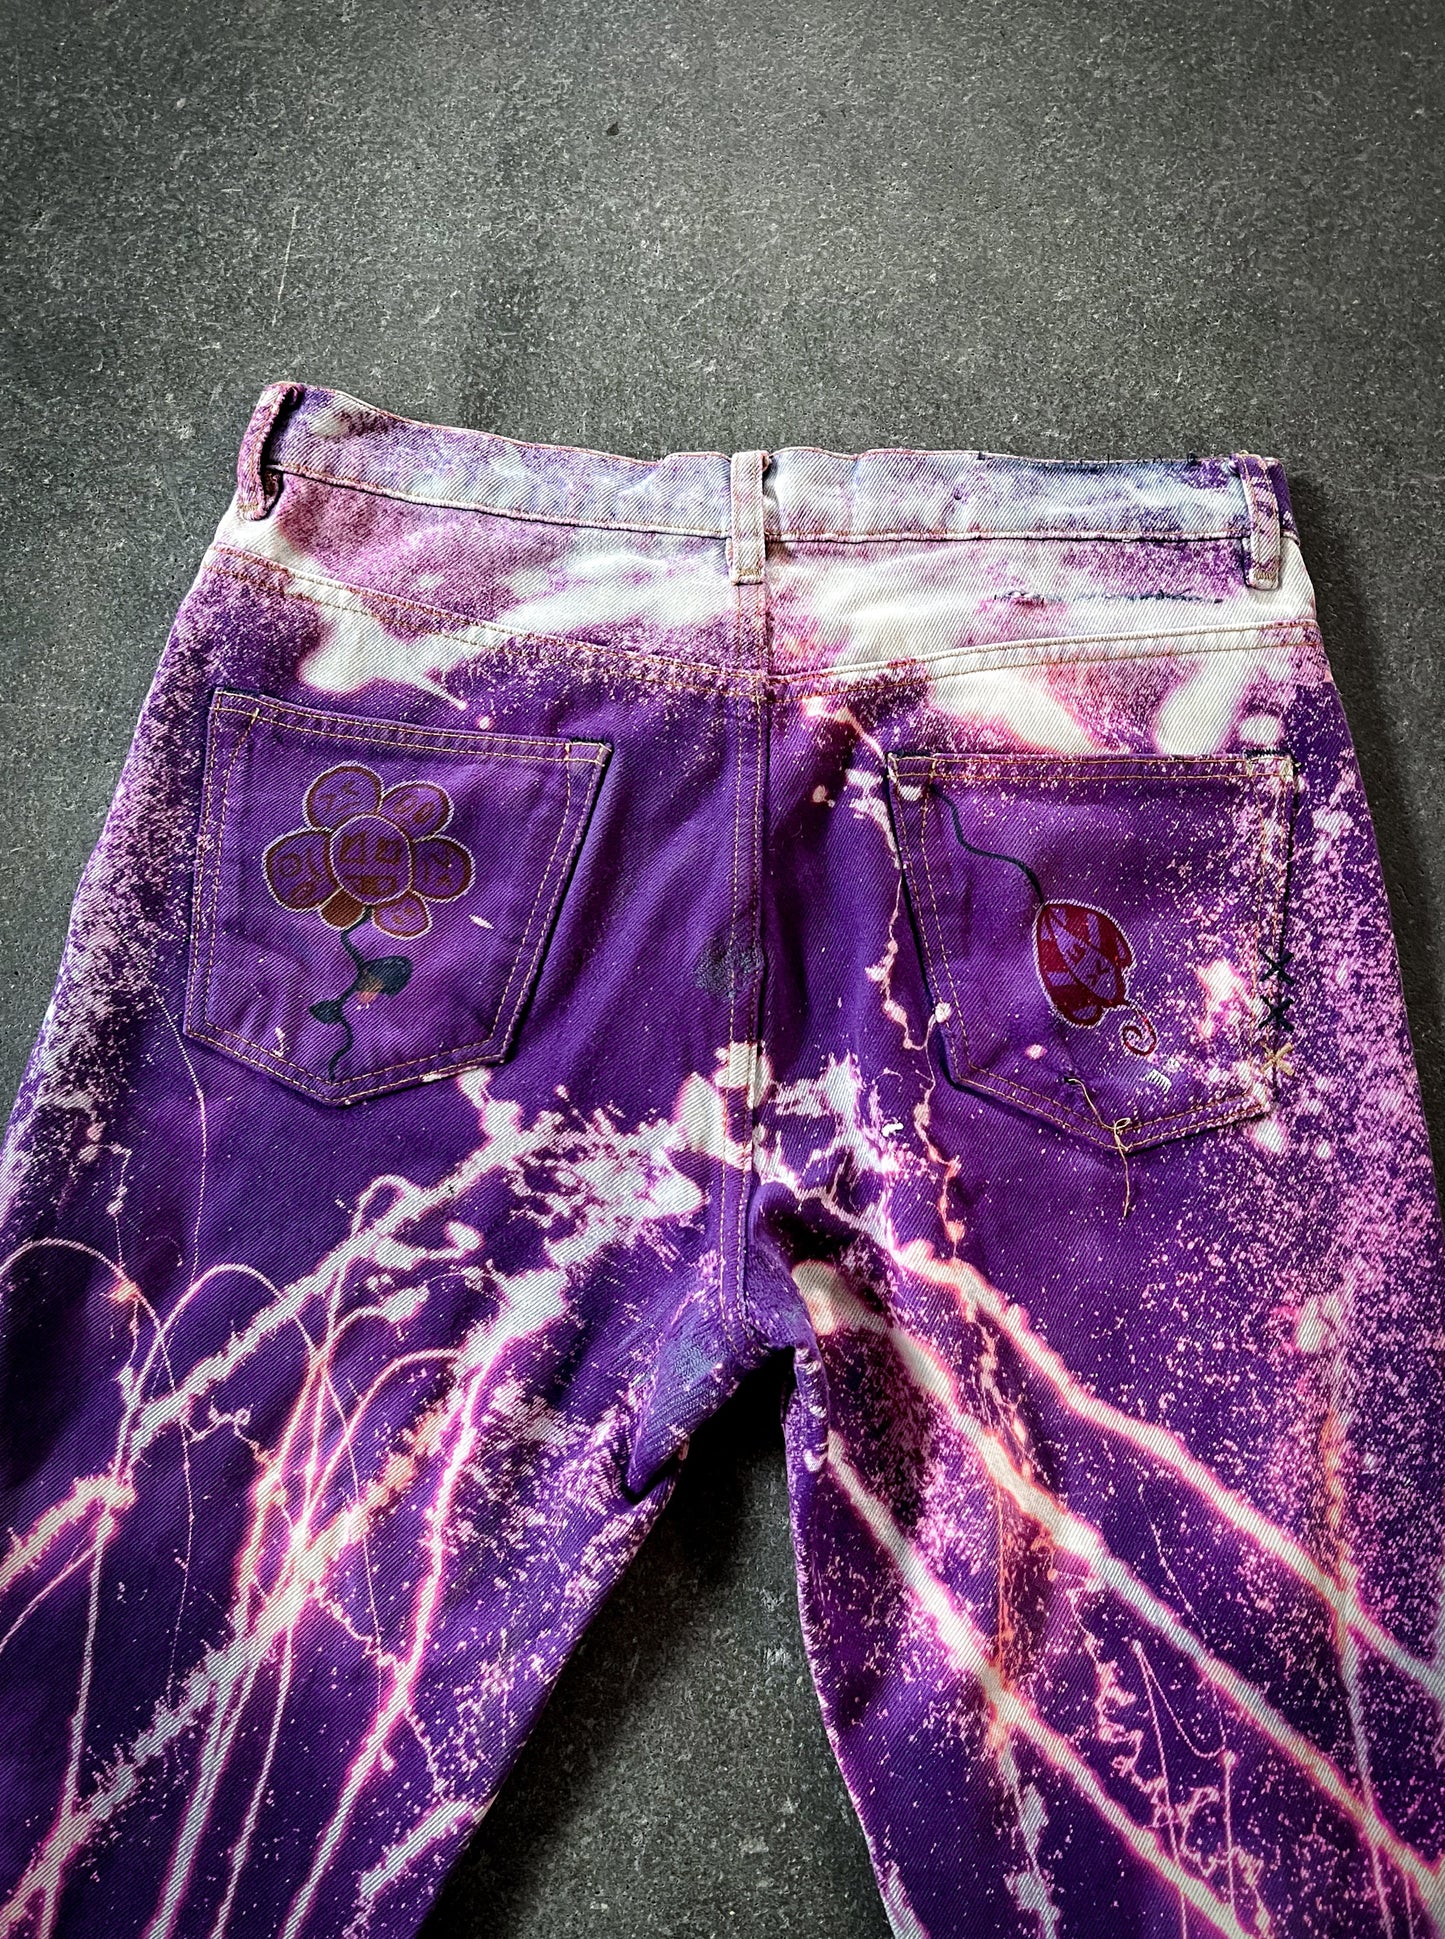 Purple Explosion Jeans